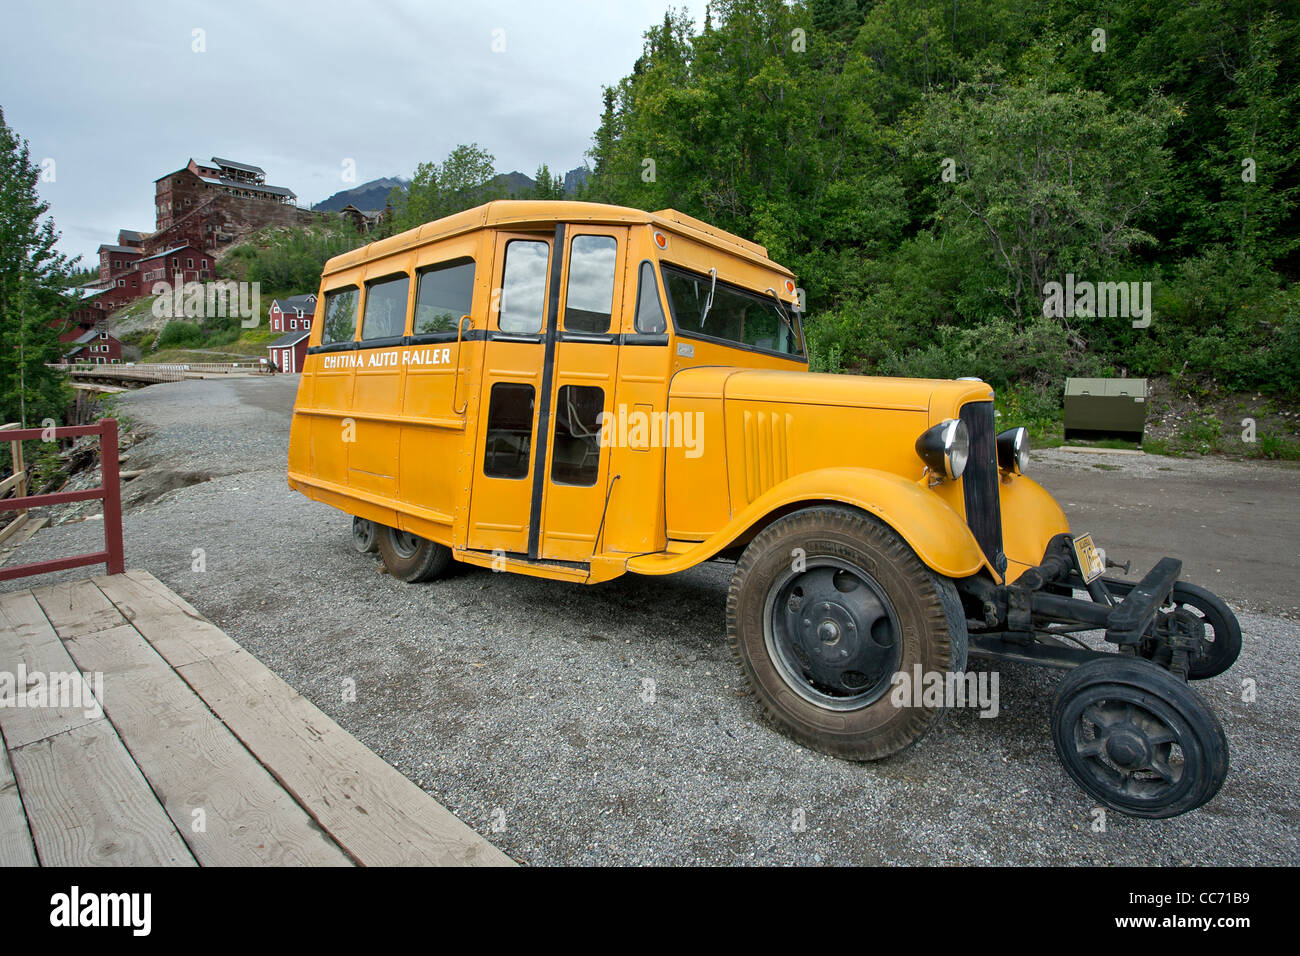 Chitina auto railer. Kennecott copper mine. Alaska. USA Stock Photo